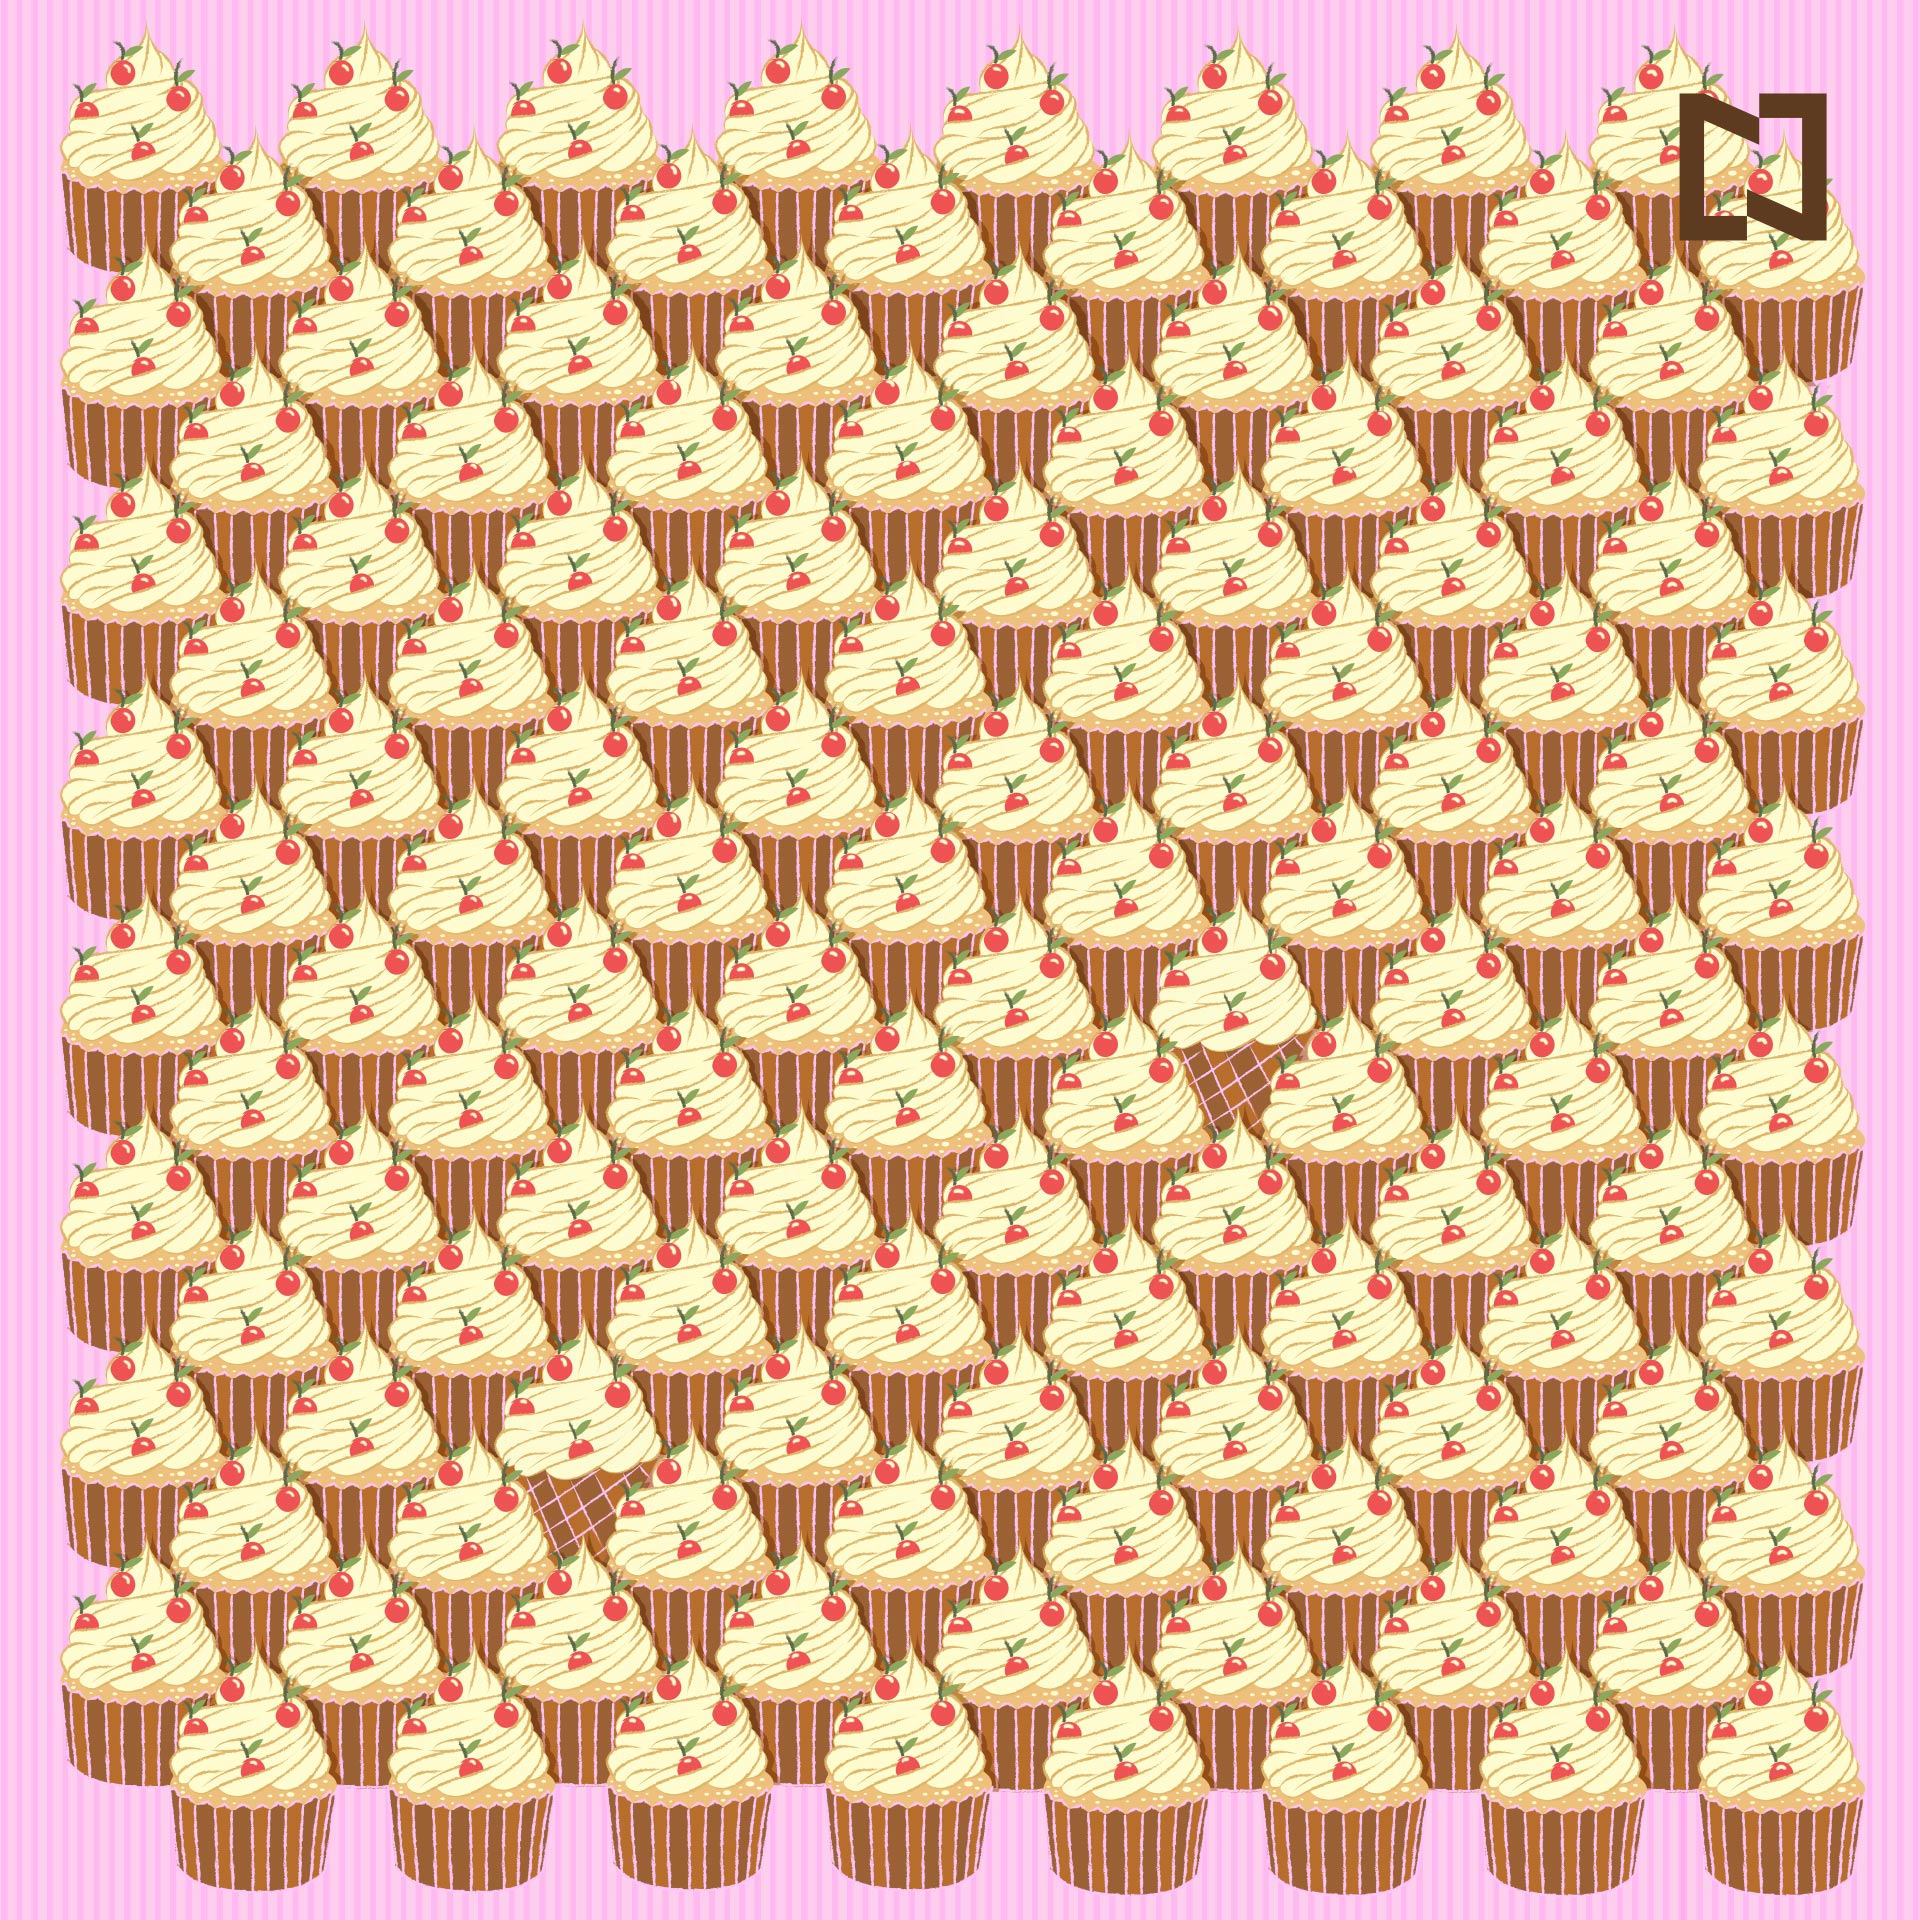 Reto visual Encuentra los conos entre los cupcakes, ilustración.